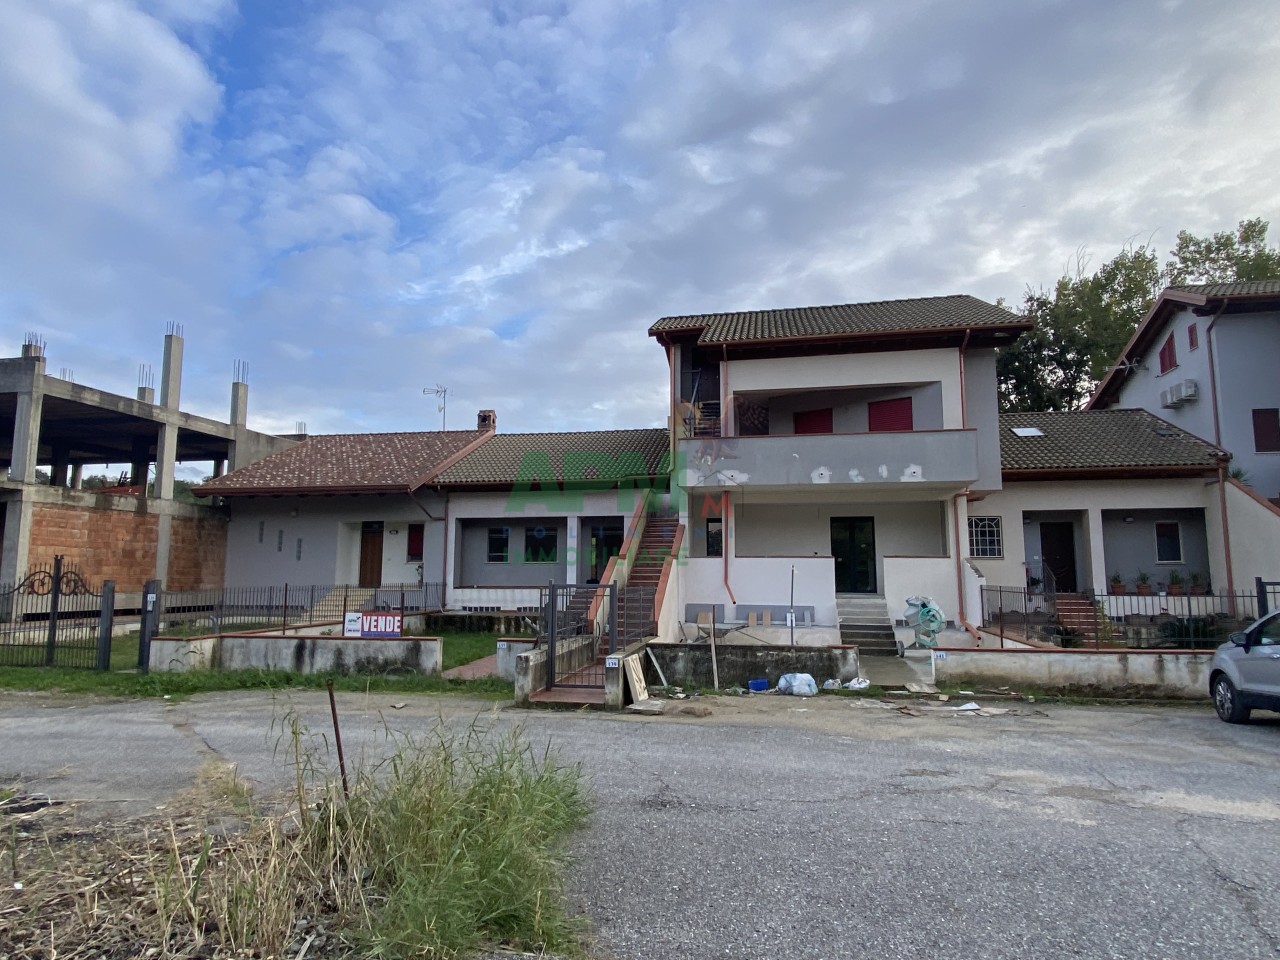 Villa a Schiera in vendita a Rende, 5 locali, prezzo € 190.000 | PortaleAgenzieImmobiliari.it